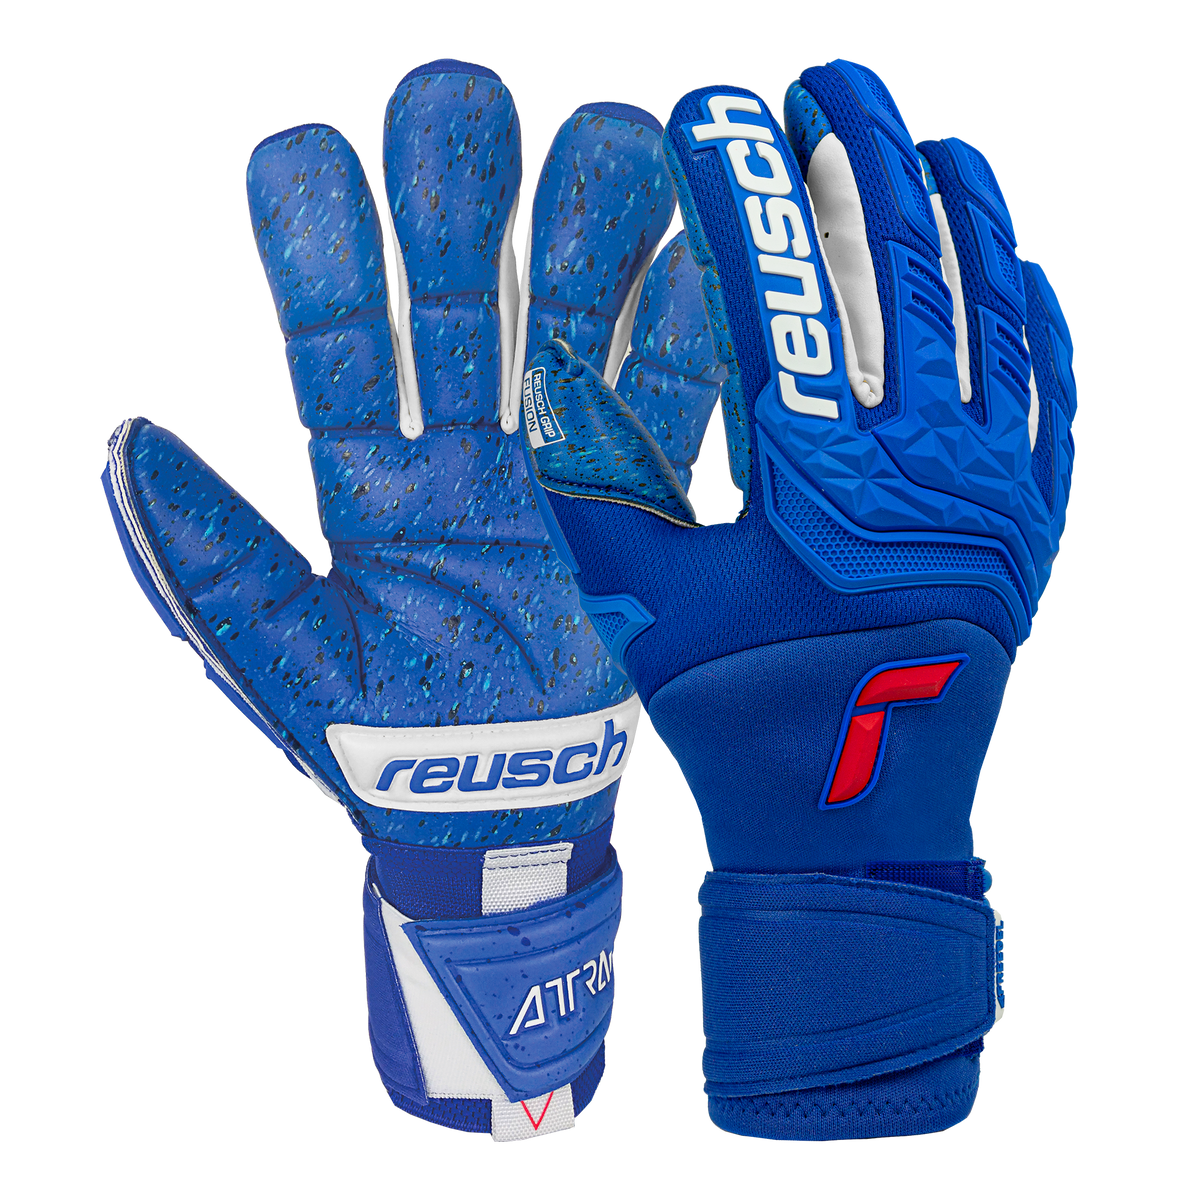 5170995 Soccer – Reusch Freegel Fusion Gloves Goaliator Goalkeeper Attrakt Blue Zone